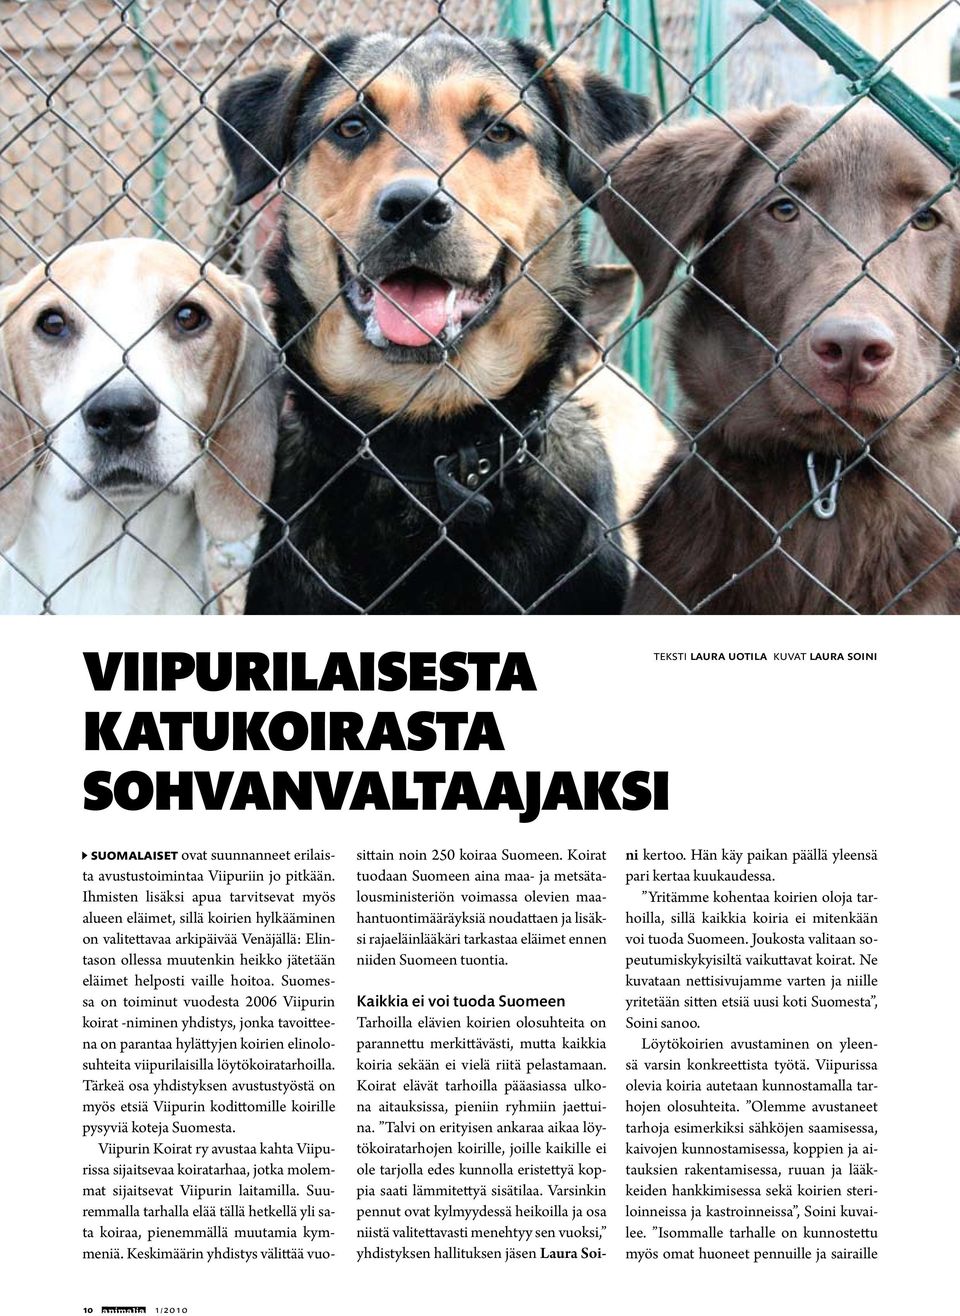 Suomessa on toiminut vuodesta 2006 Viipurin koirat -niminen yhdistys, jonka tavoitteena on parantaa hylättyjen koirien elinolosuhteita viipurilaisilla löytökoiratarhoilla.